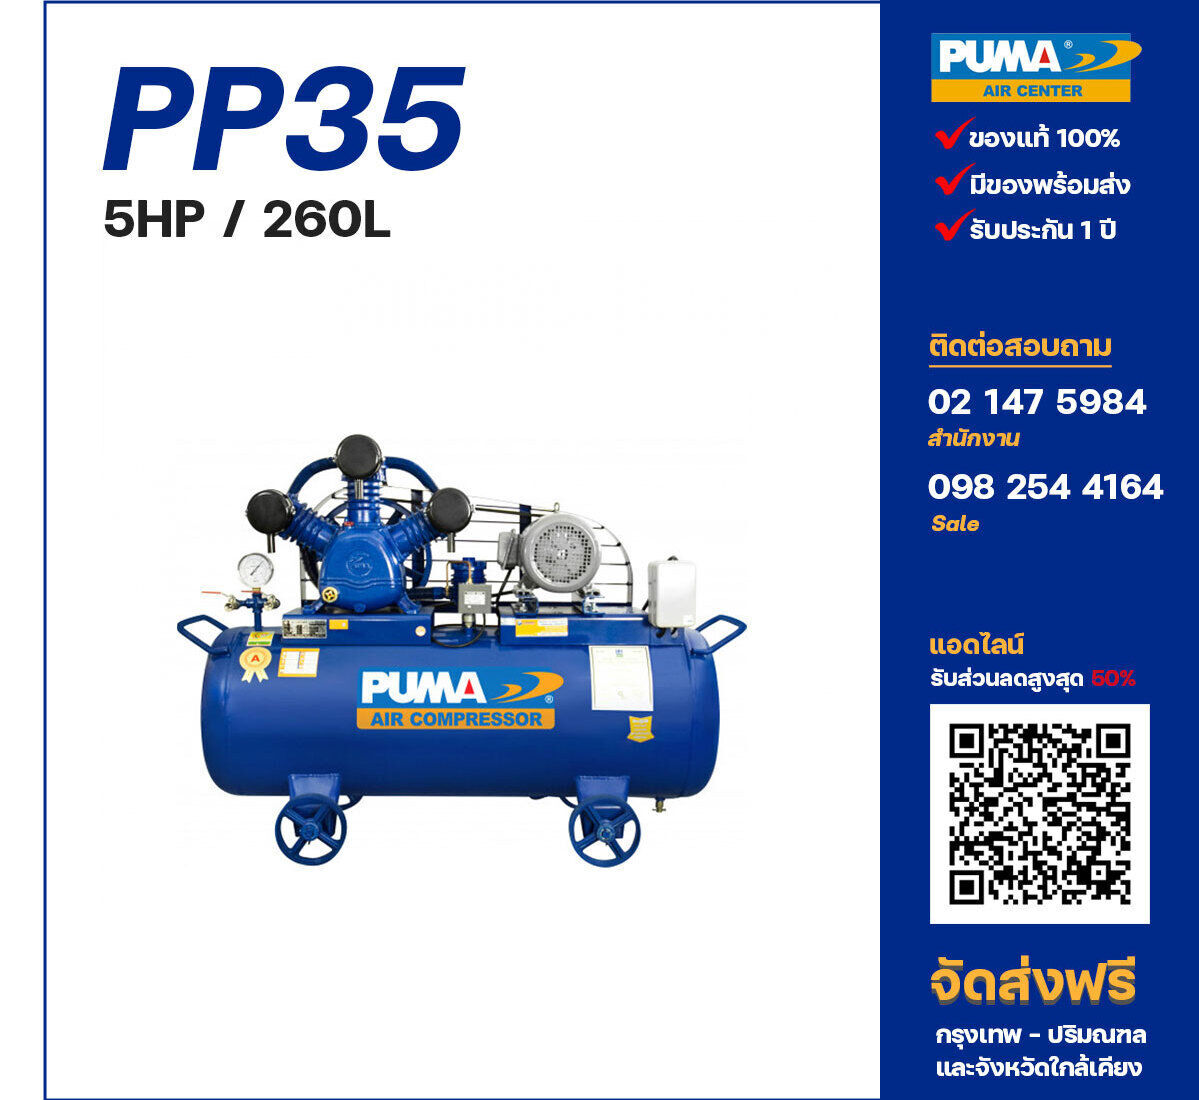 ปั๊มลมพูม่า PUMA PP35-PPM220V/380V ปั๊มลมลูกสูบ ขนาด 3 สูบ 5 แรงม้า 260 ลิตร PUMA พร้อมมอเตอร์ PUMA ไฟ 220V/380V ส่งฟรี กรุงเทพฯ-ปริมณฑล รับประกัน 1 ปี